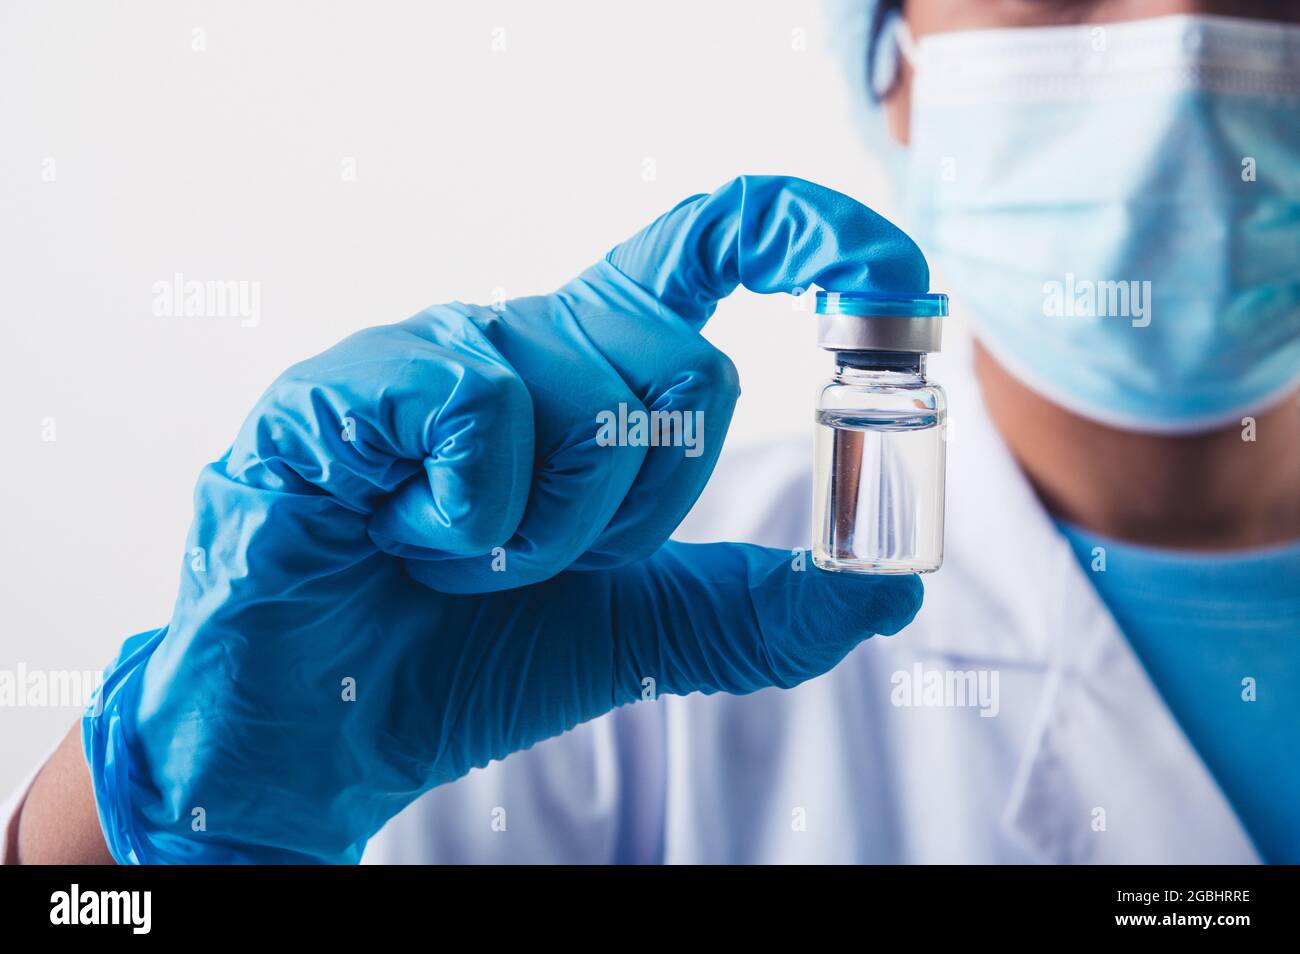 Flaconcino di closeup del vaccino covid-19 in mano a uno scienziato professionista o medico in laboratorio per il trattamento con guanti da maschera e camice da laboratorio su fondo bianco Foto Stock